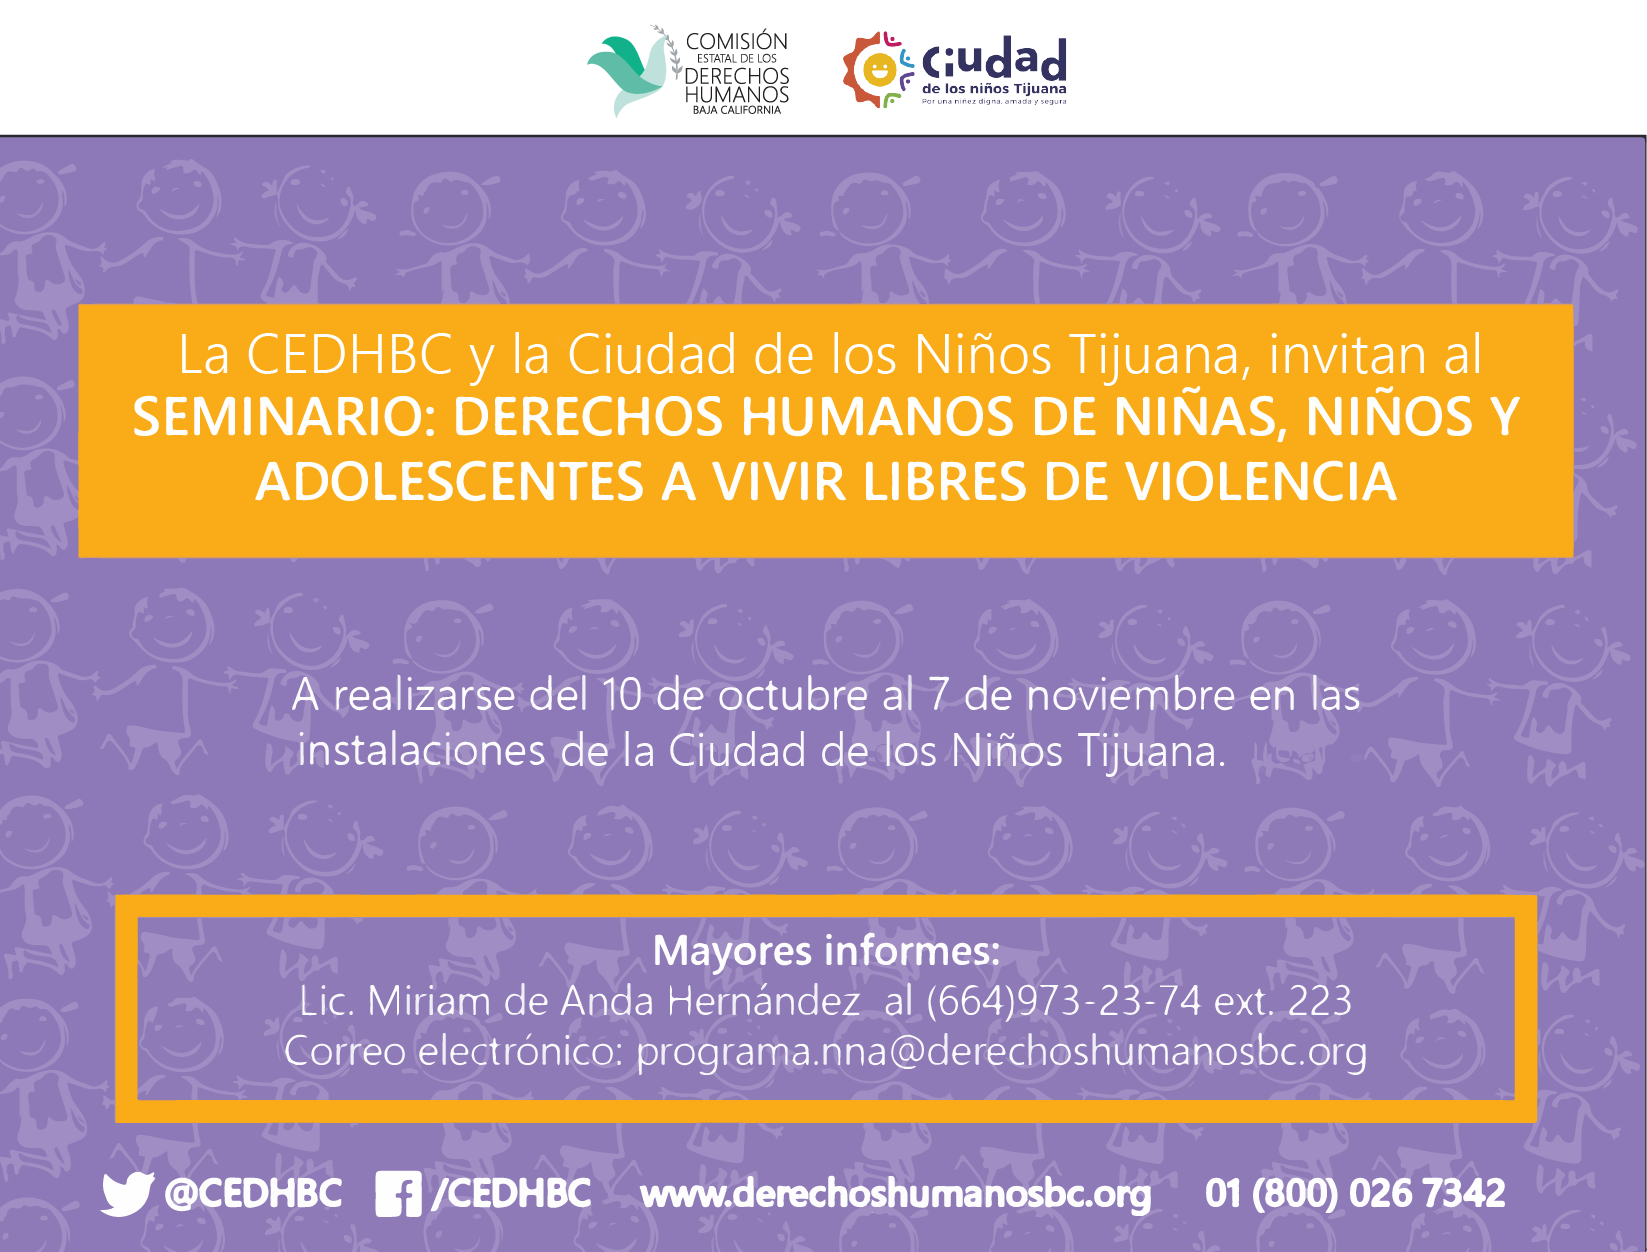 Invitan a seminario sobre derechos humanos de niñas, niños y adolescentes a vivir libres de violencia